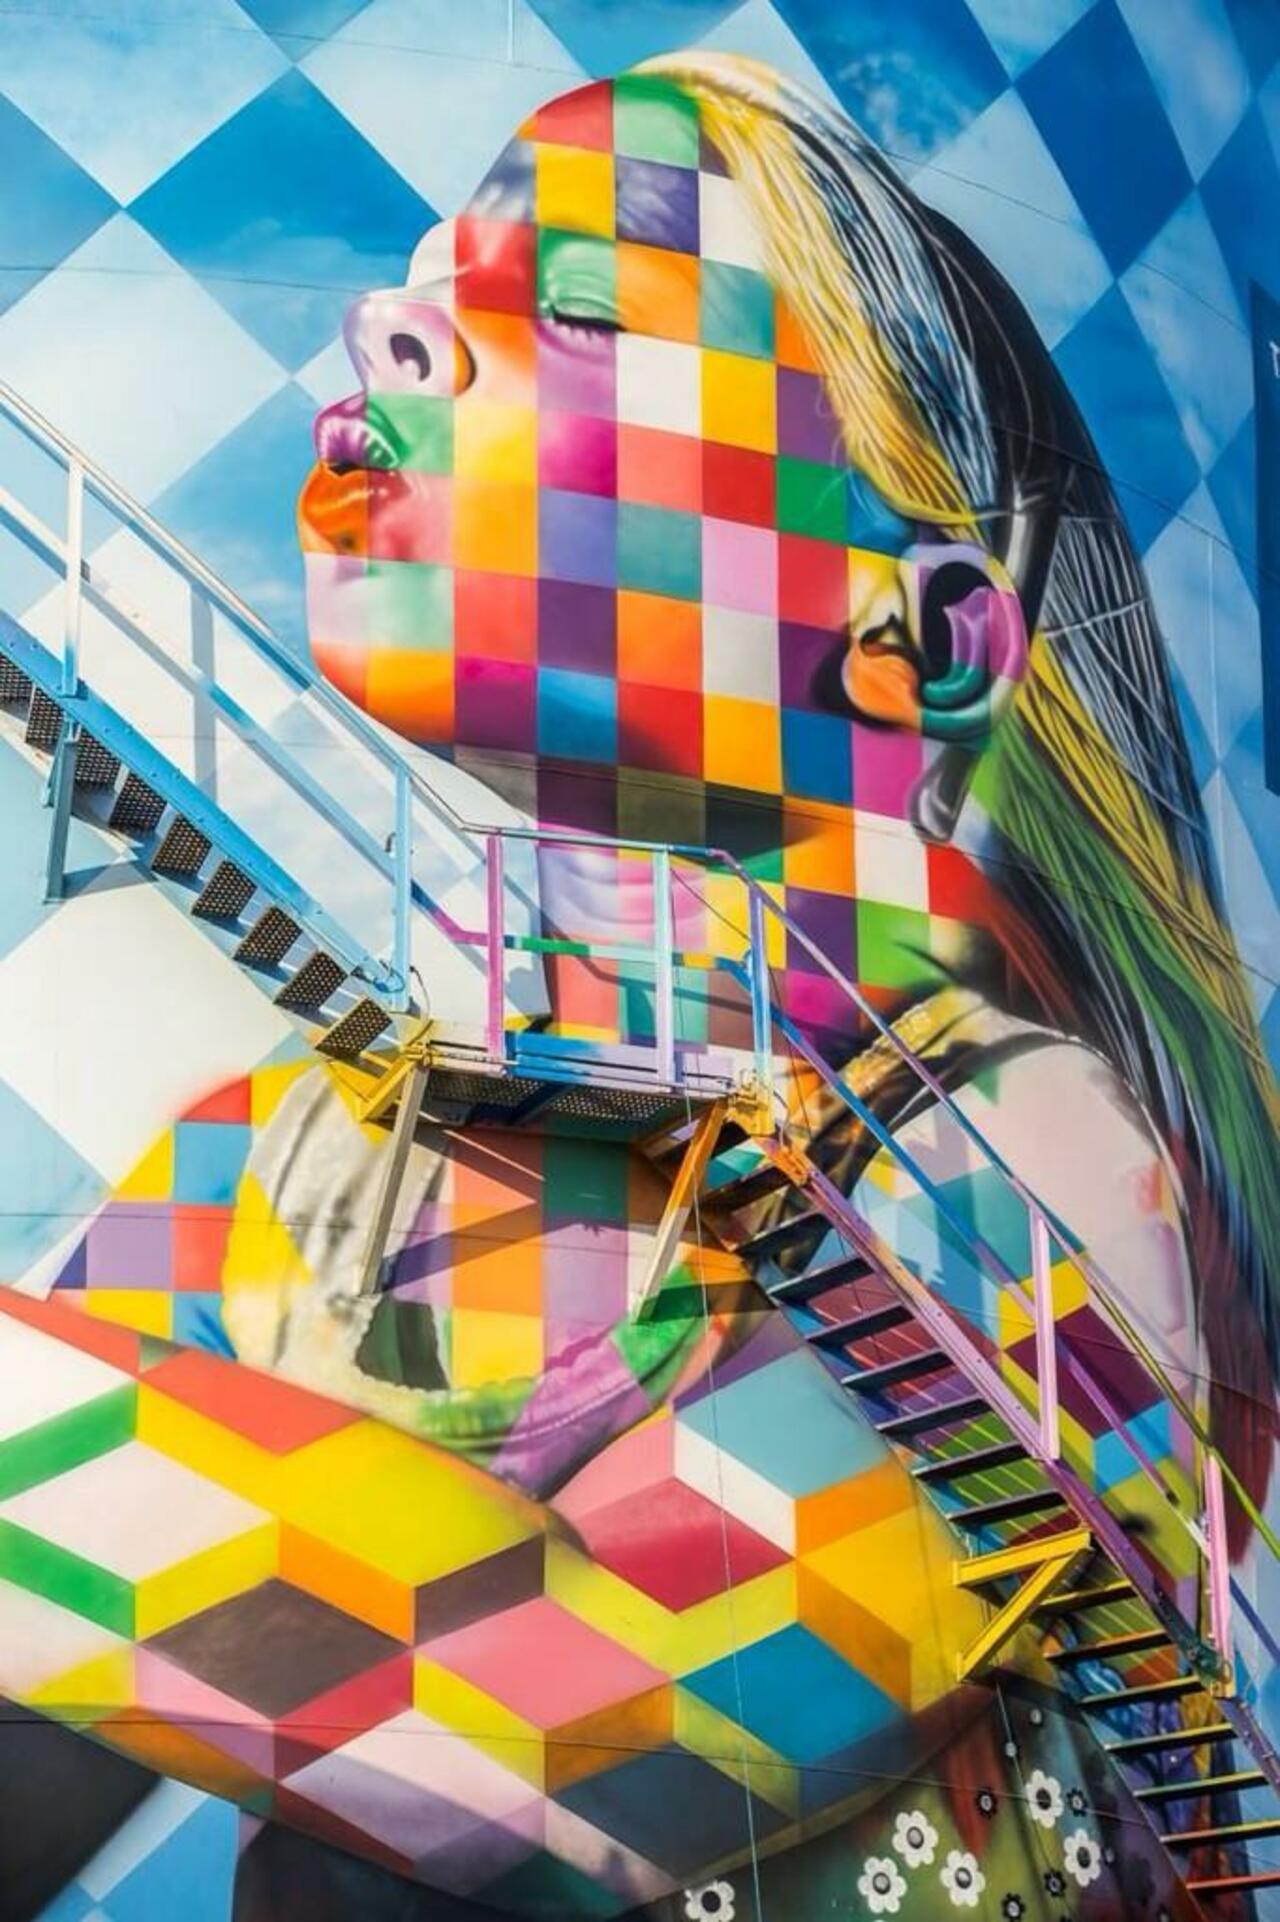 Artist Eduardo Kobra new stunning Street Art project located in Cubatão, Brazil #art #mural #graffiti #streetart http://t.co/WoffzvoXnf